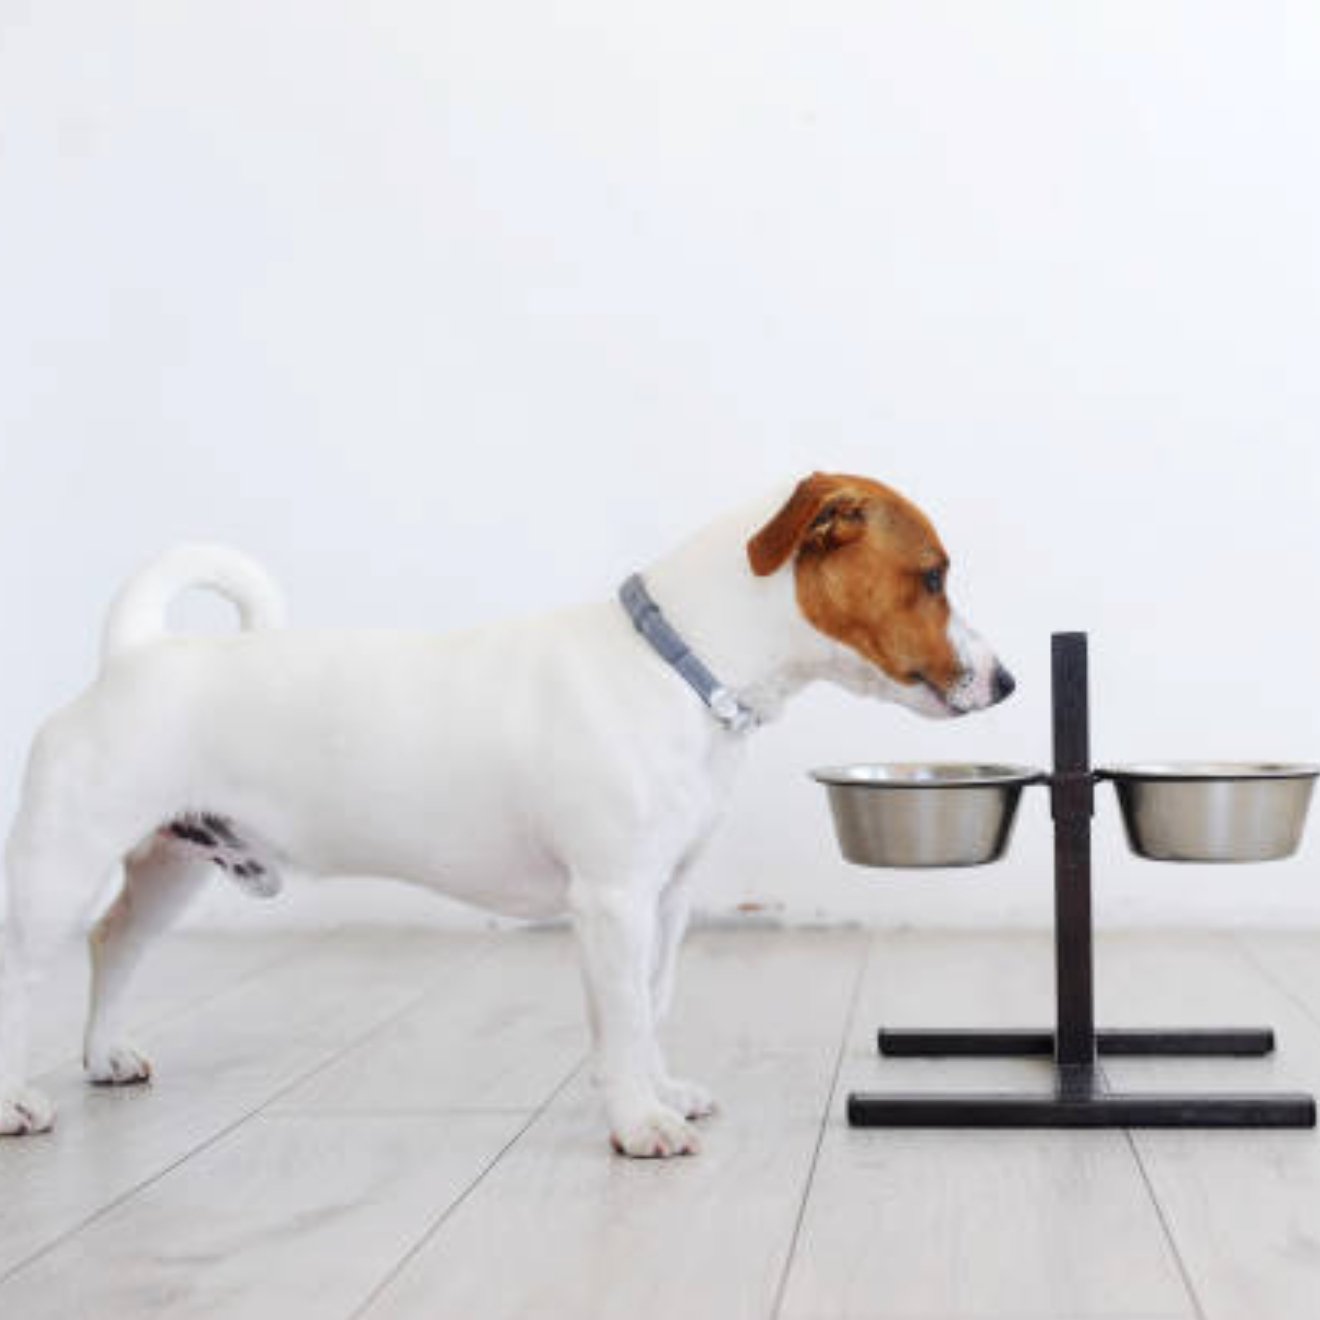 寵物餵食器的清潔與保養：教你維護寵物的健康飲食環境 - grantclassic